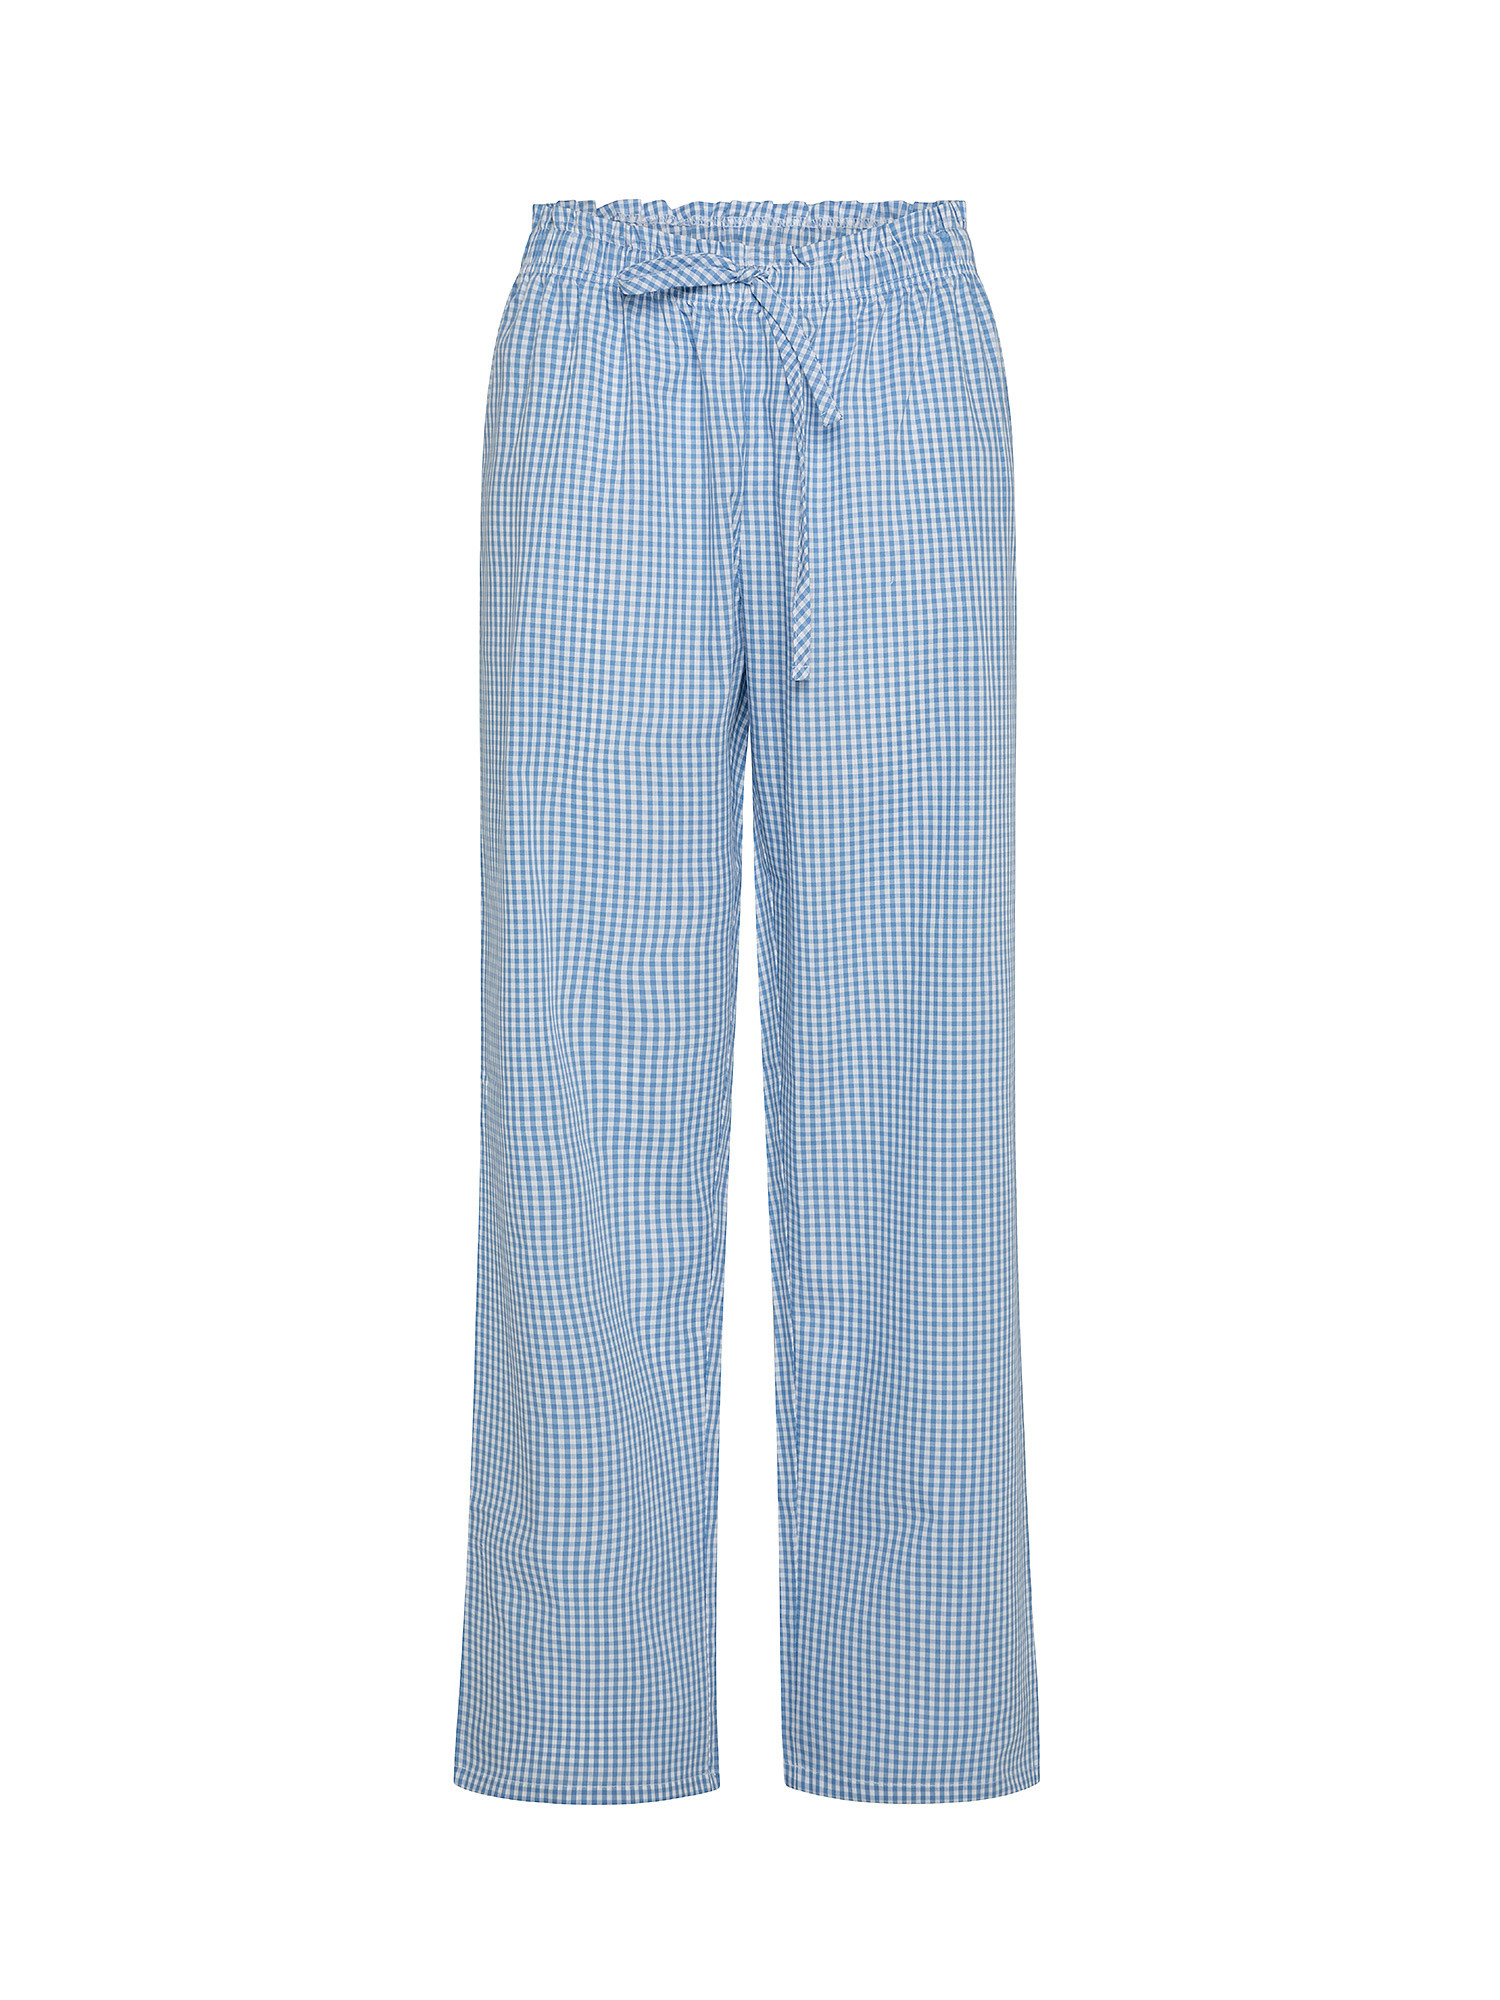 Pantaloni cotone tinto filo a quadretti, Azzurro, large